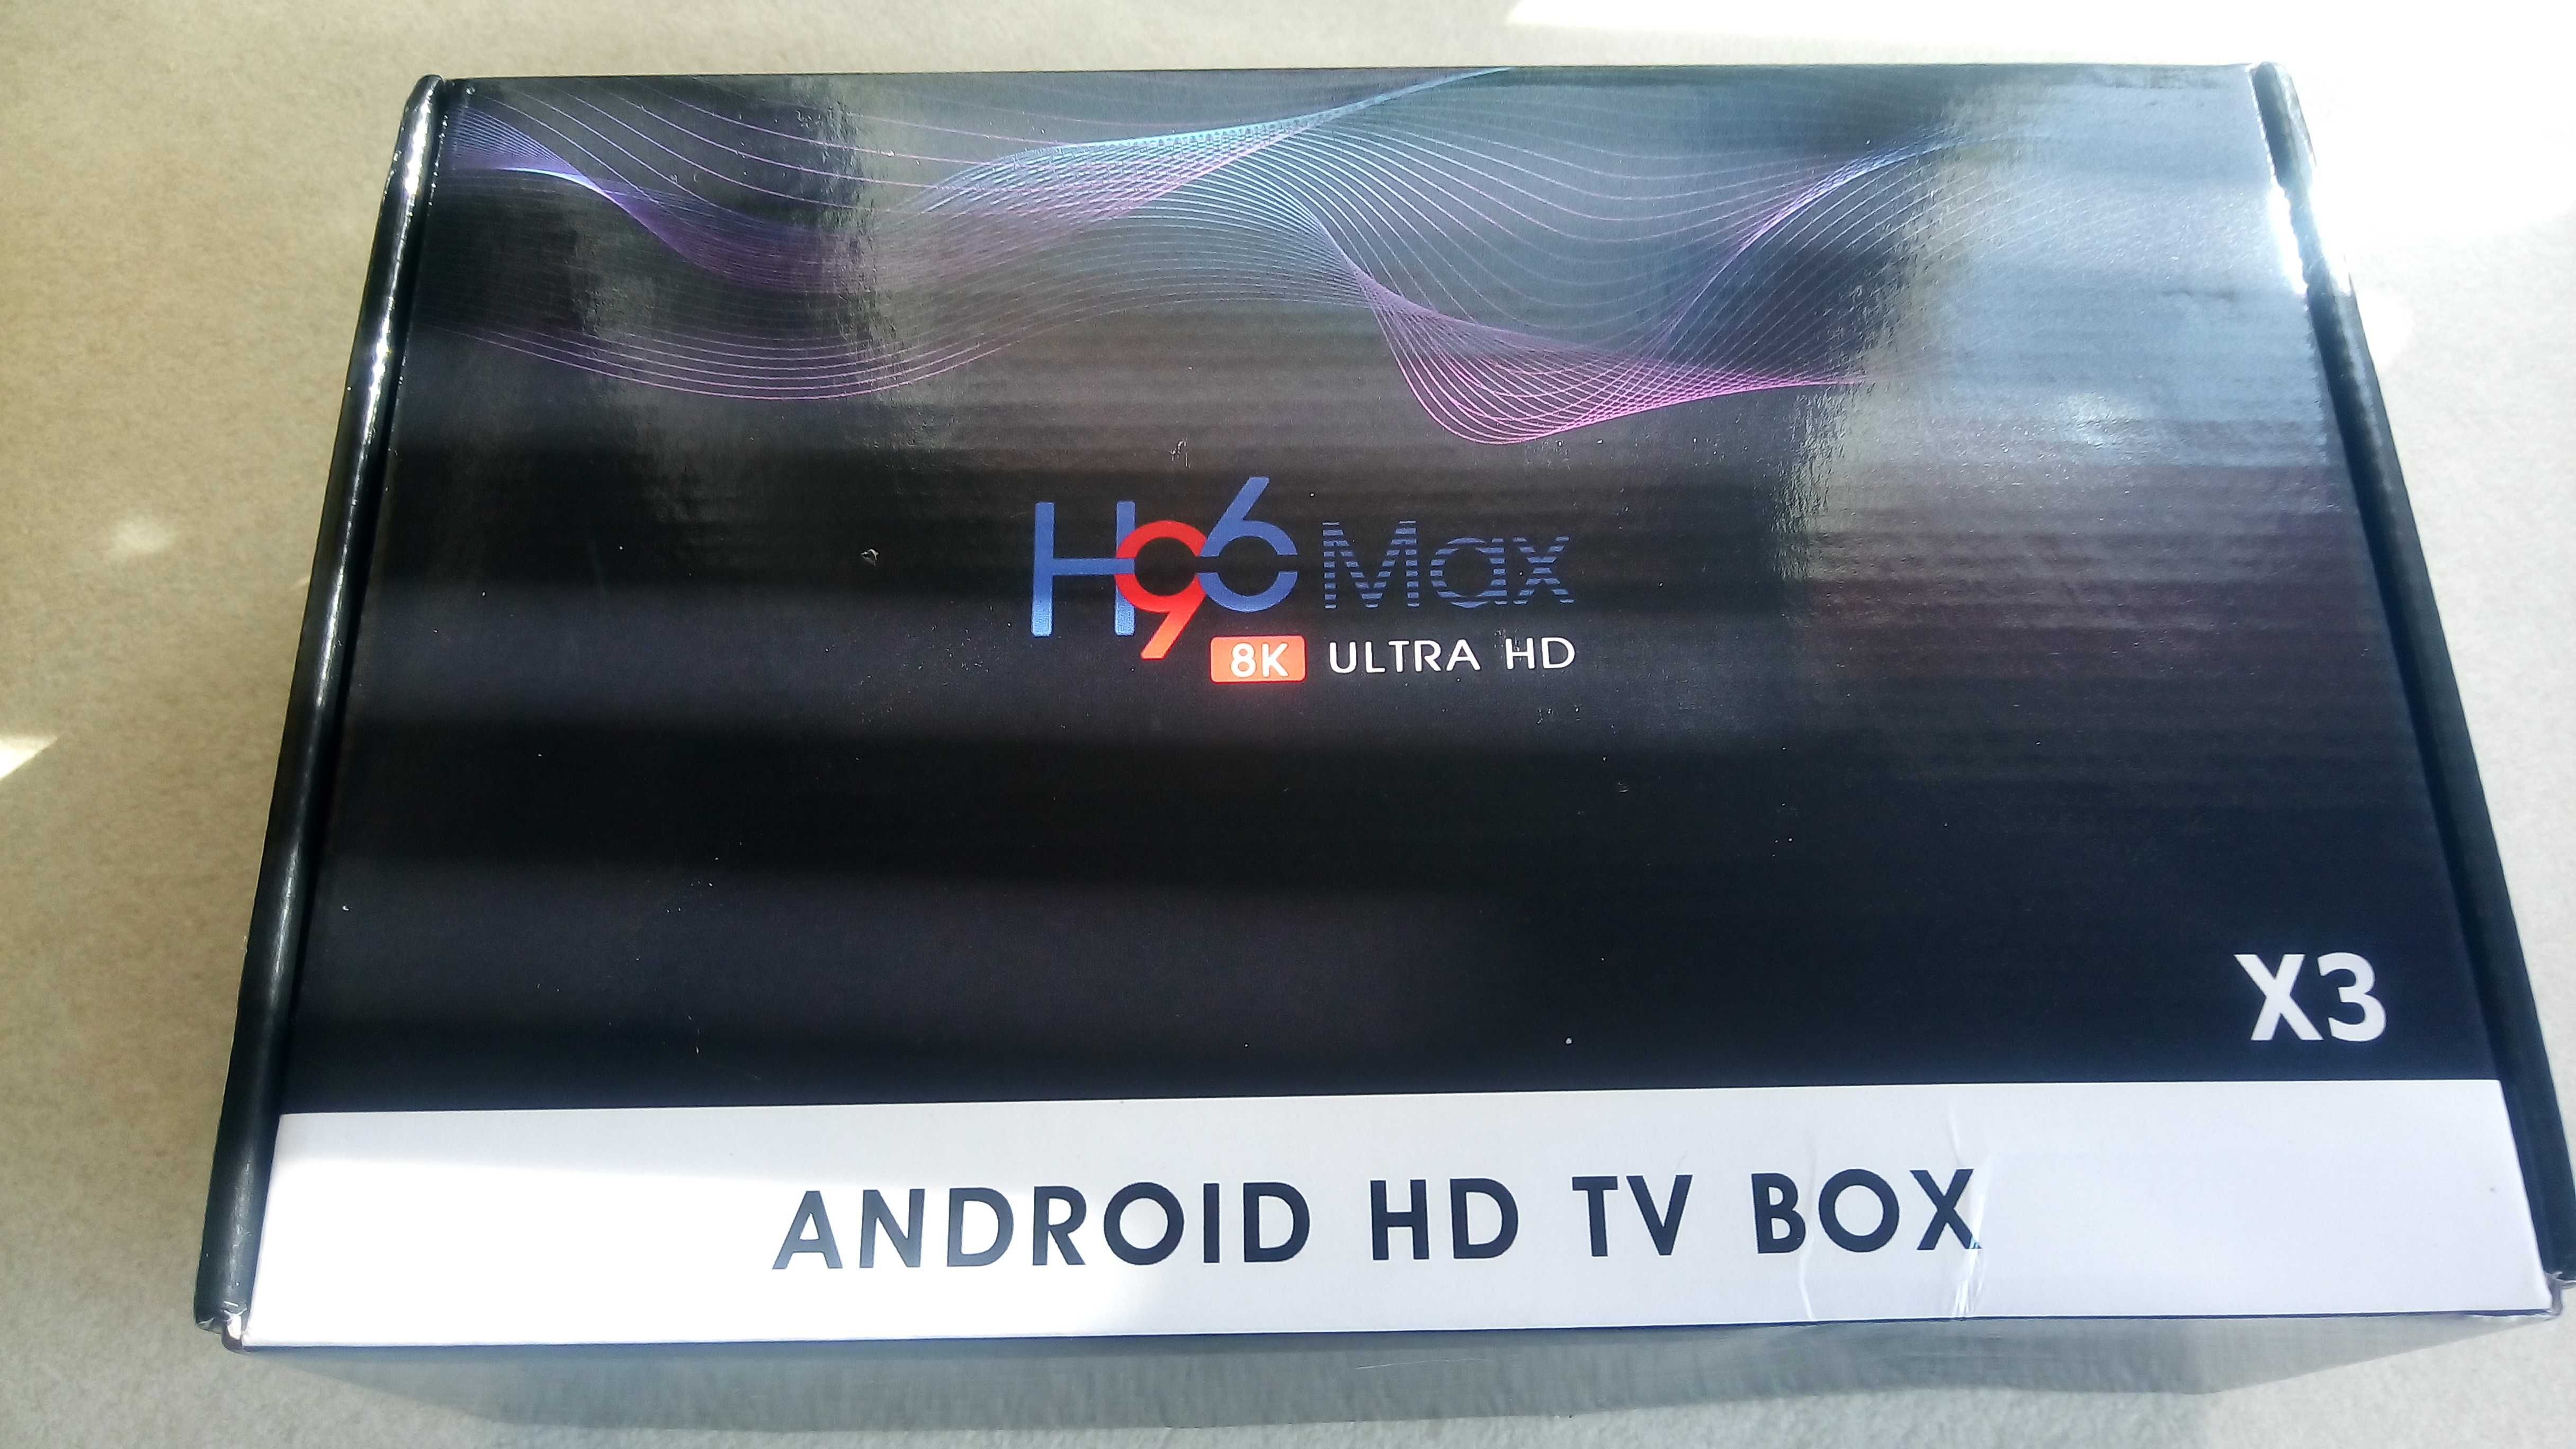 Android hd tv box H96MAX